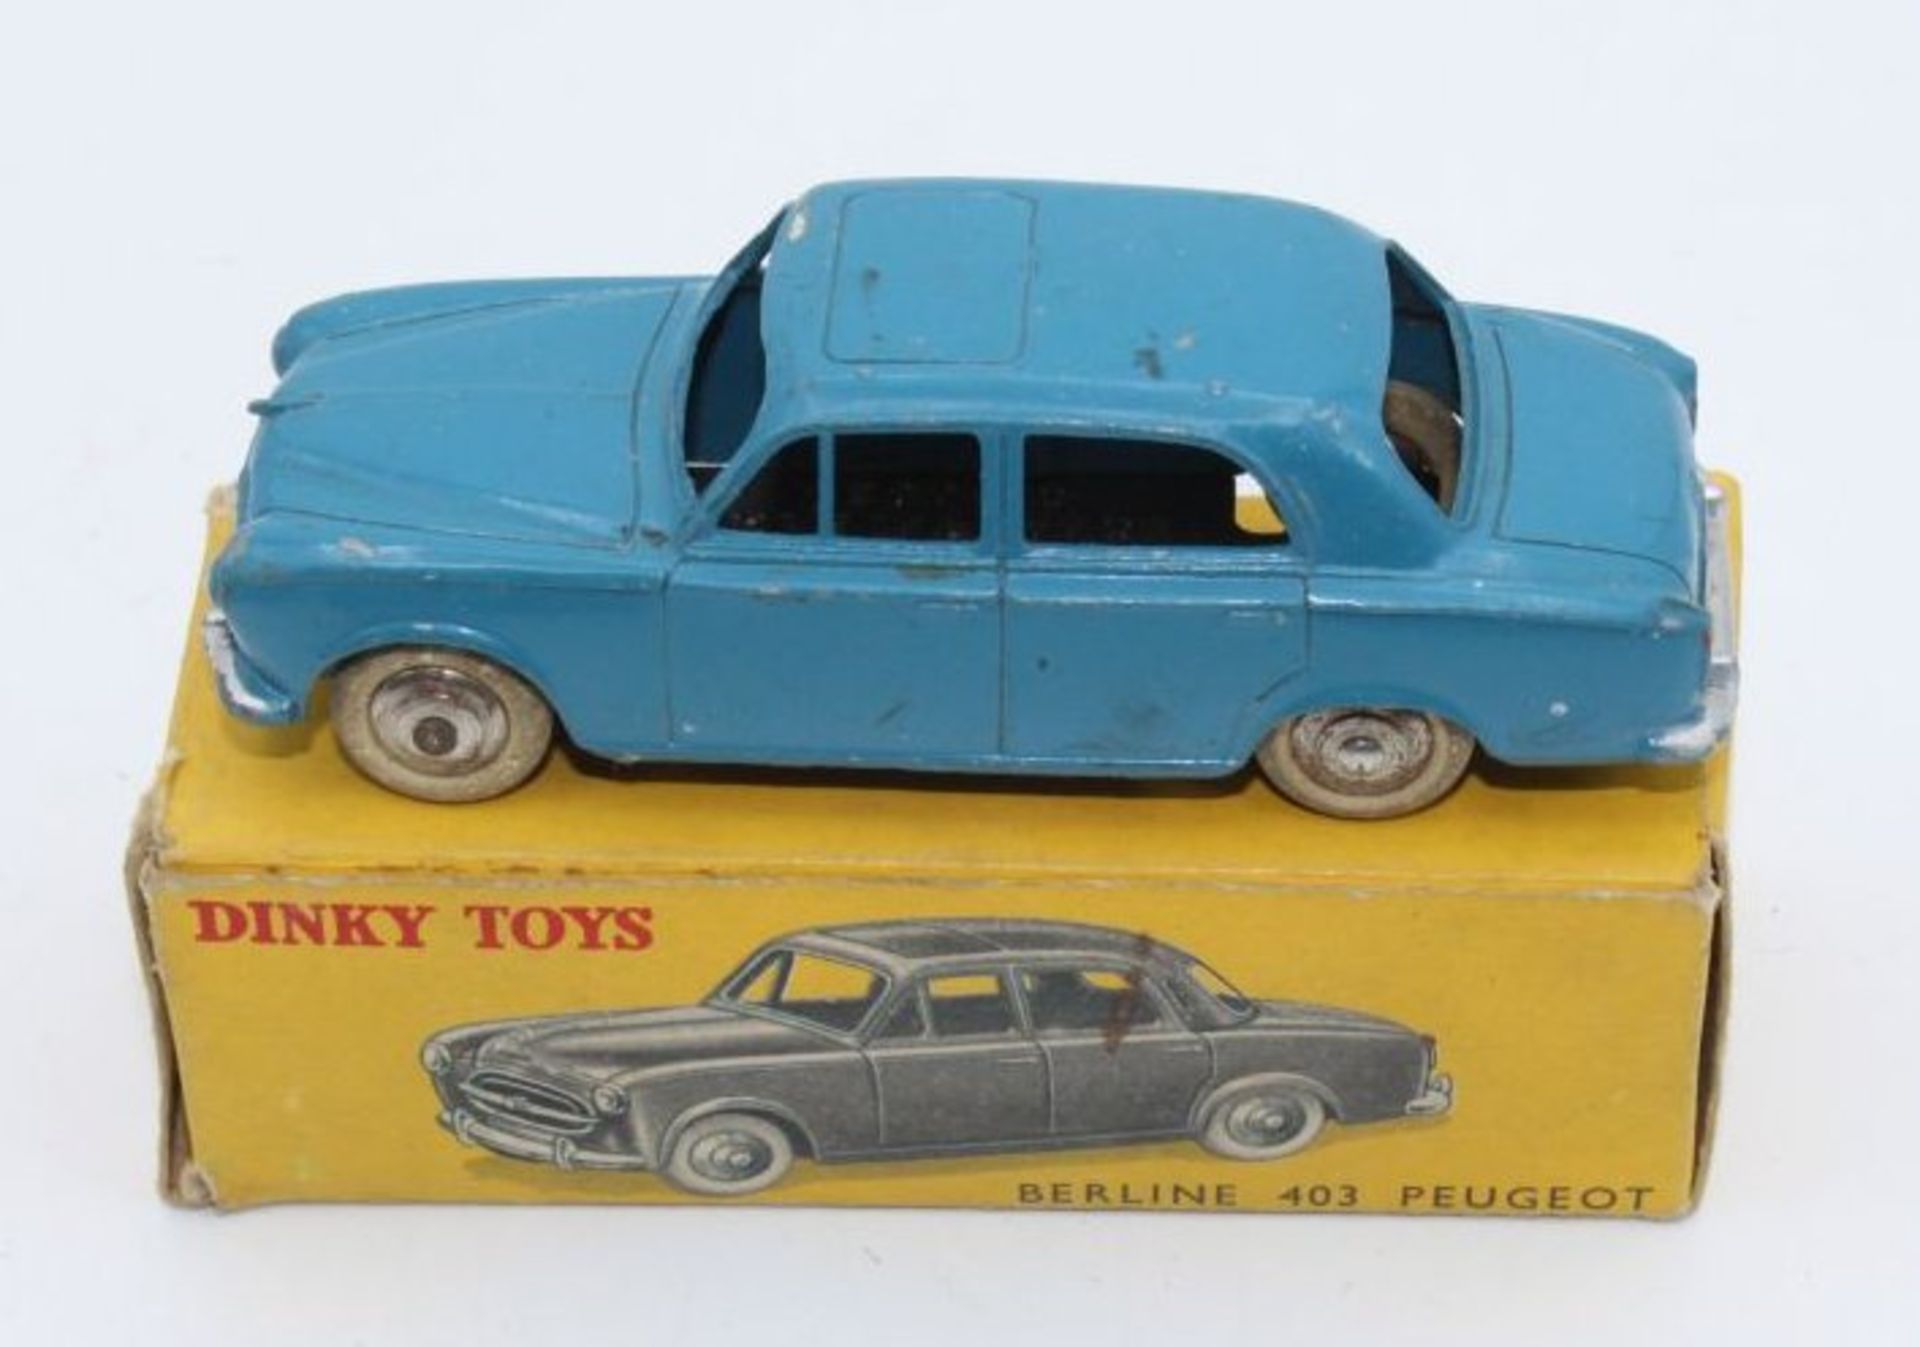 Dinky Toys "Berline 403 Peugeot", Frankreich, 1:43, bespielt, orig. Karton mit kl. Läsure- - -22.